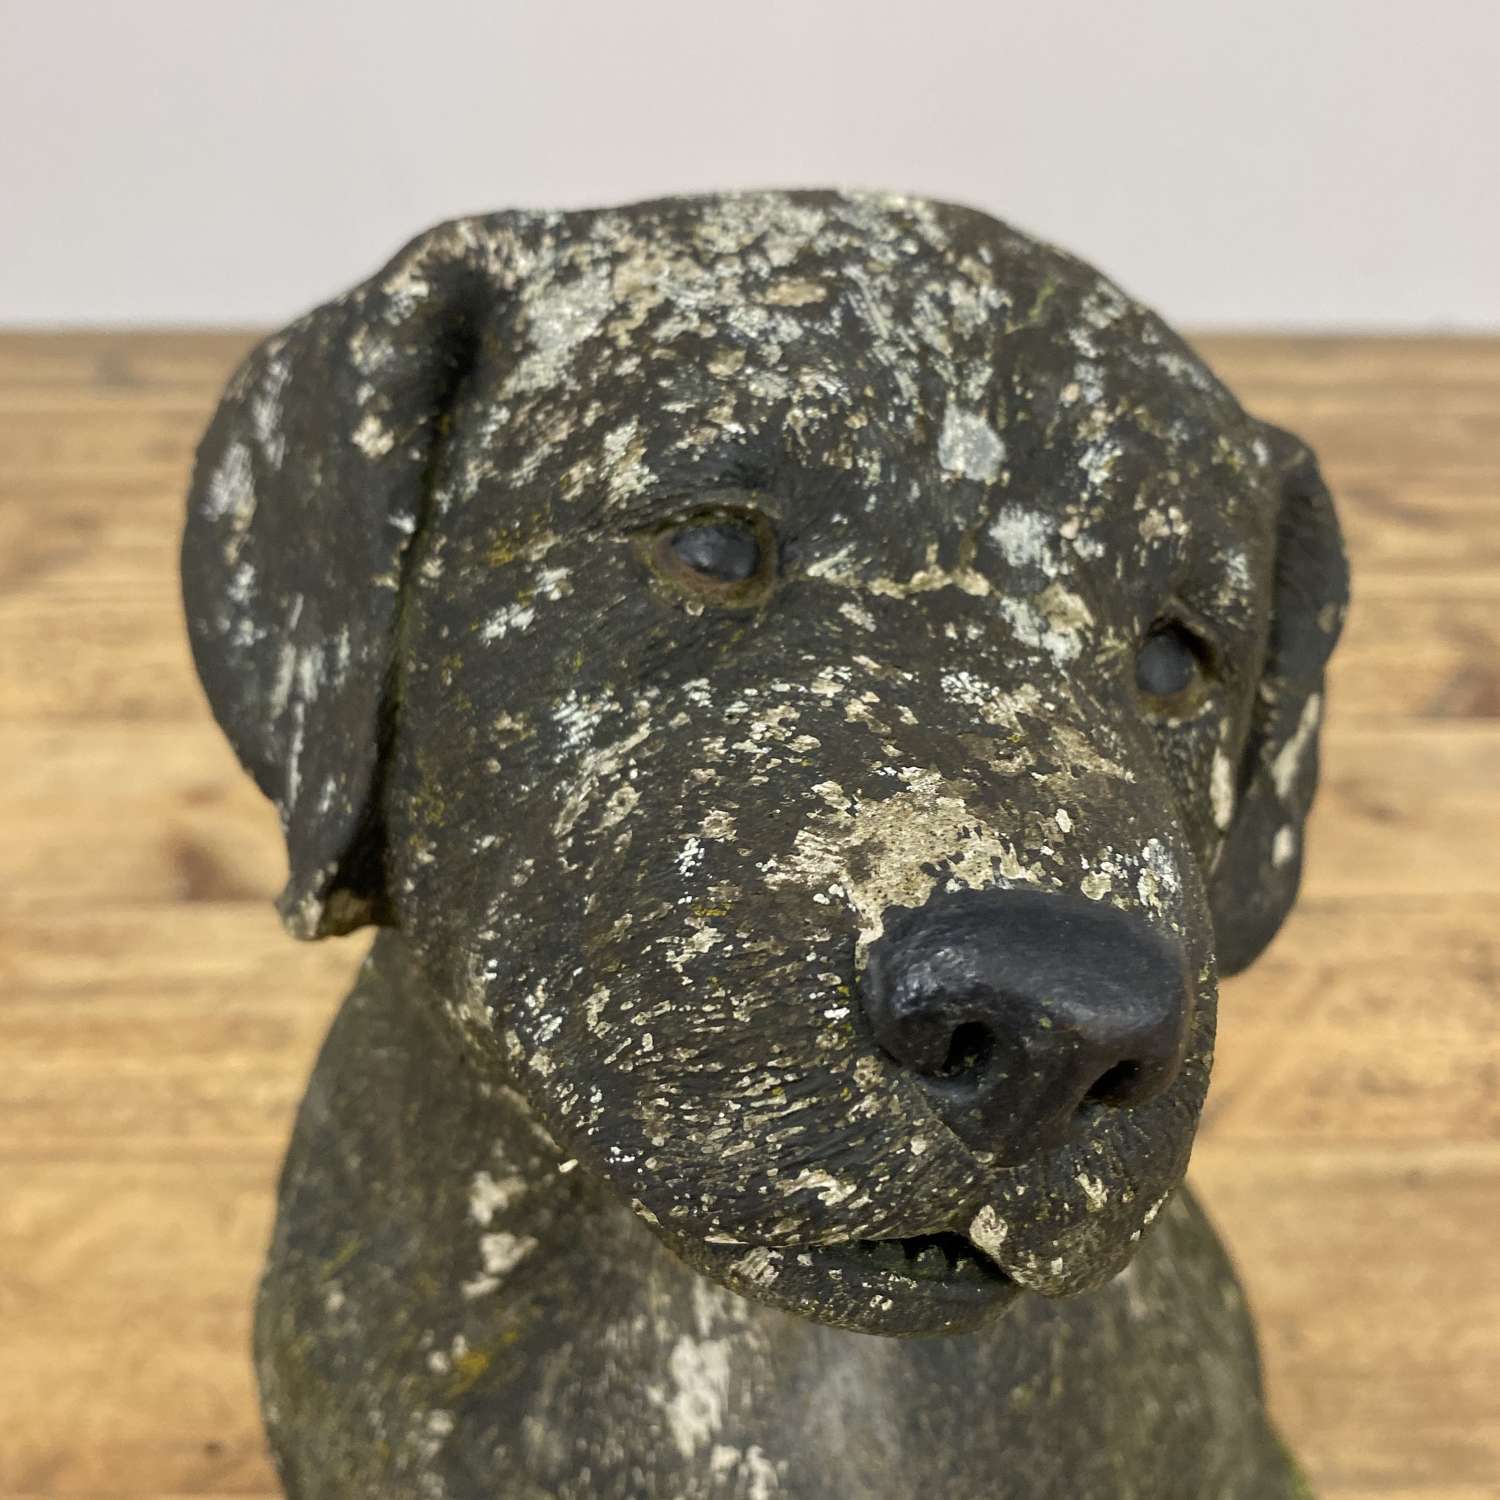 Weathered stone dog